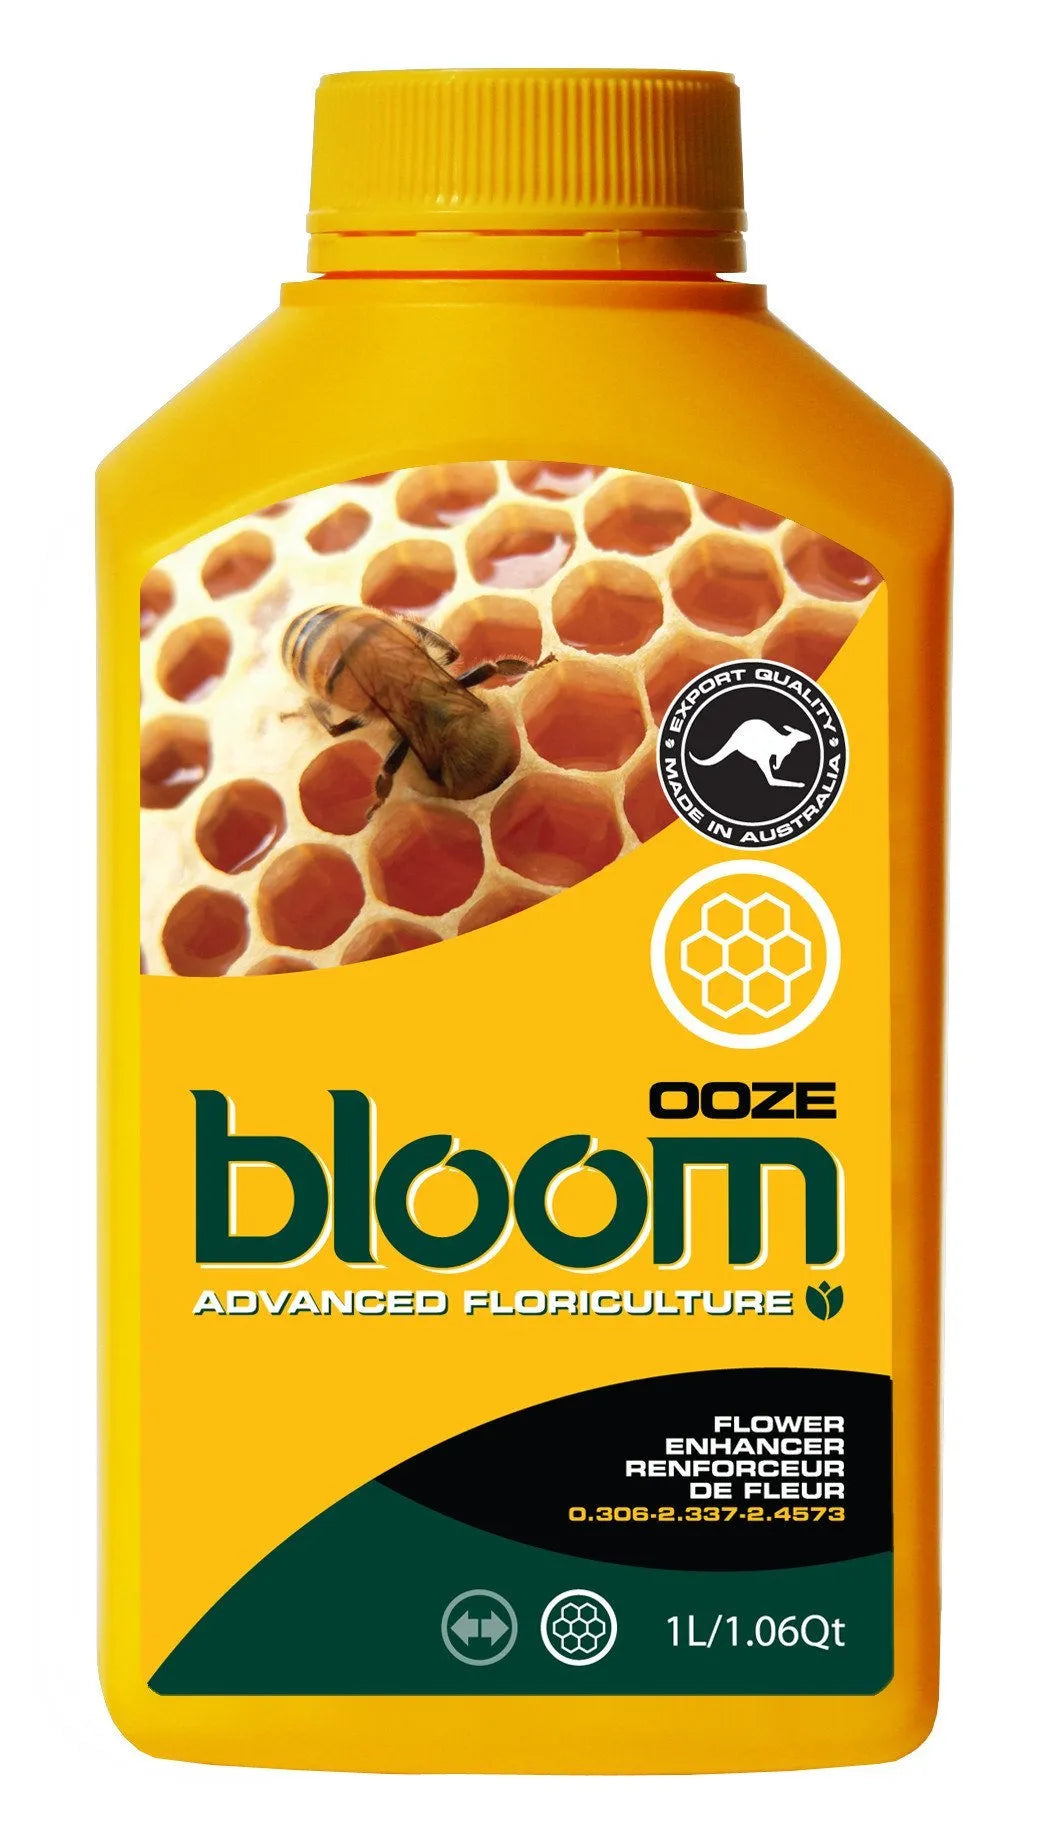 Bloom Yellow Bottle - Ooze